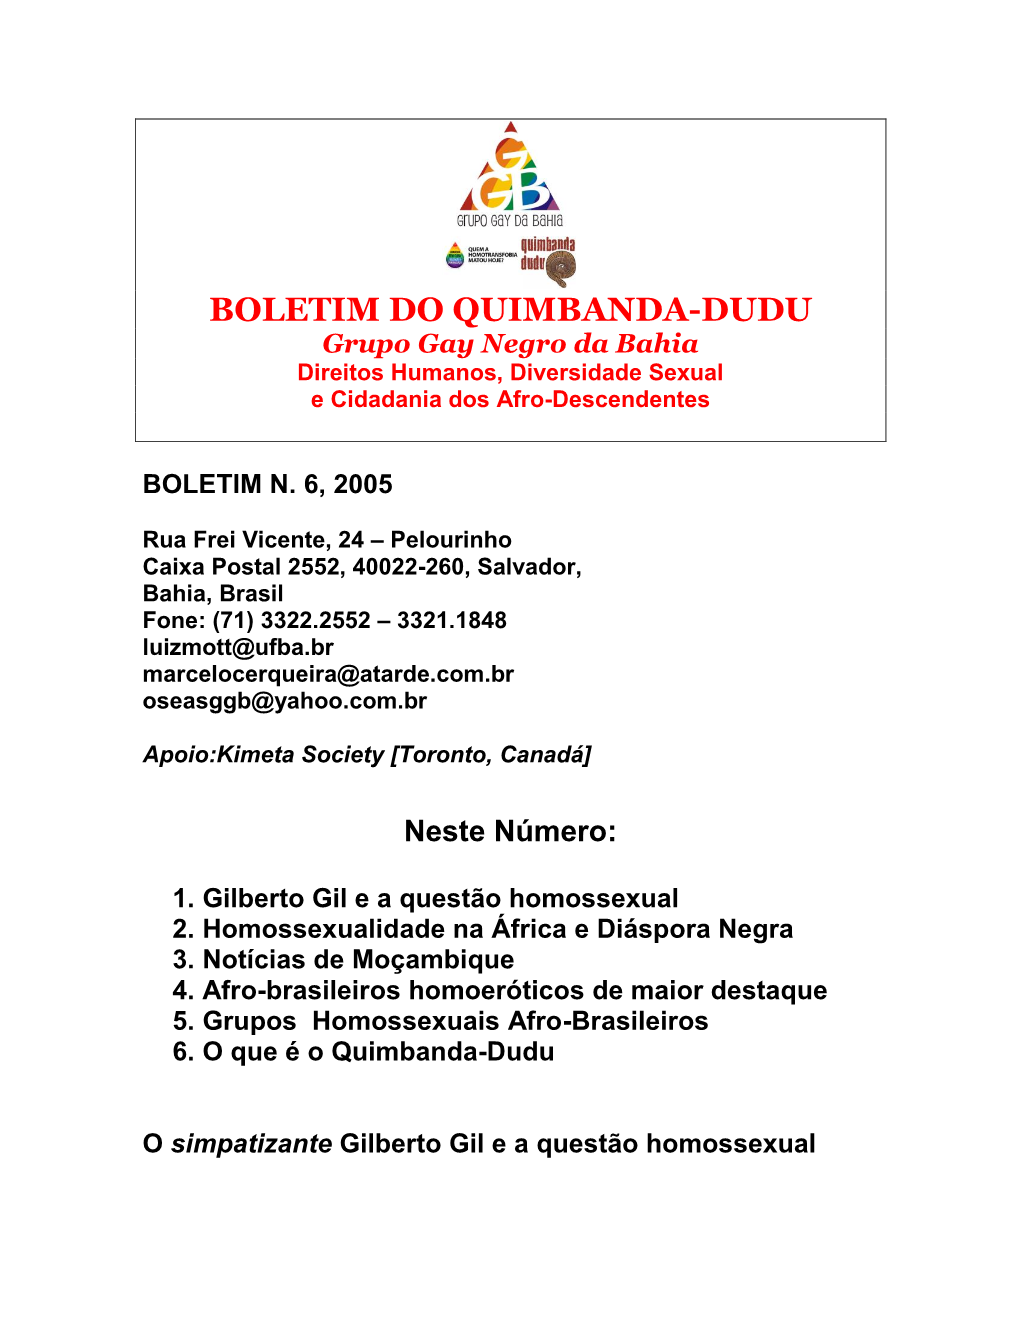 BOLETIM DO QUIMBANDA-DUDU Grupo Gay Negro Da Bahia Direitos Humanos, Diversidade Sexual E Cidadania Dos Afro-Descendentes